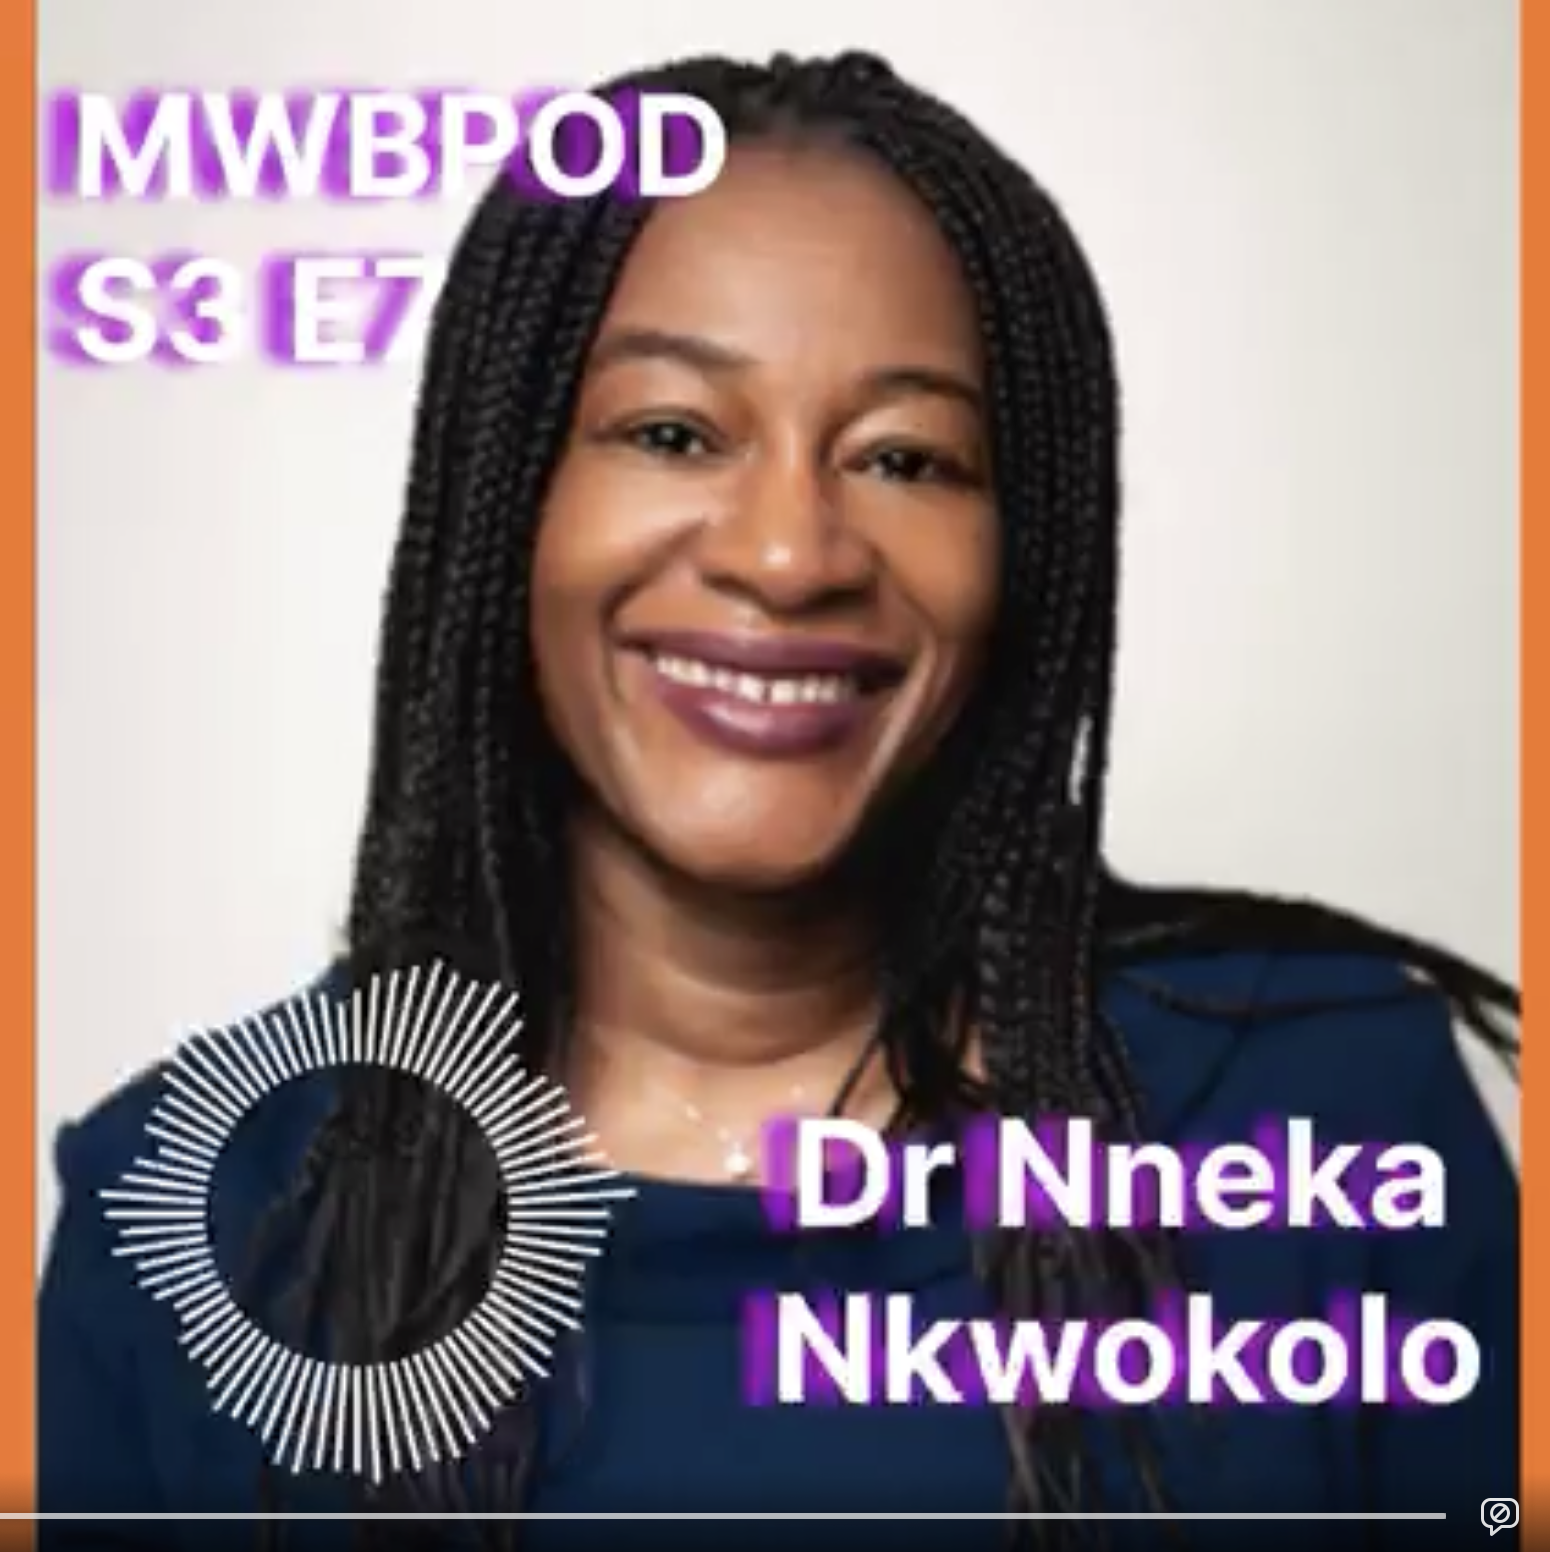 S3 EP7 DR NNEKA NKWOKOLO